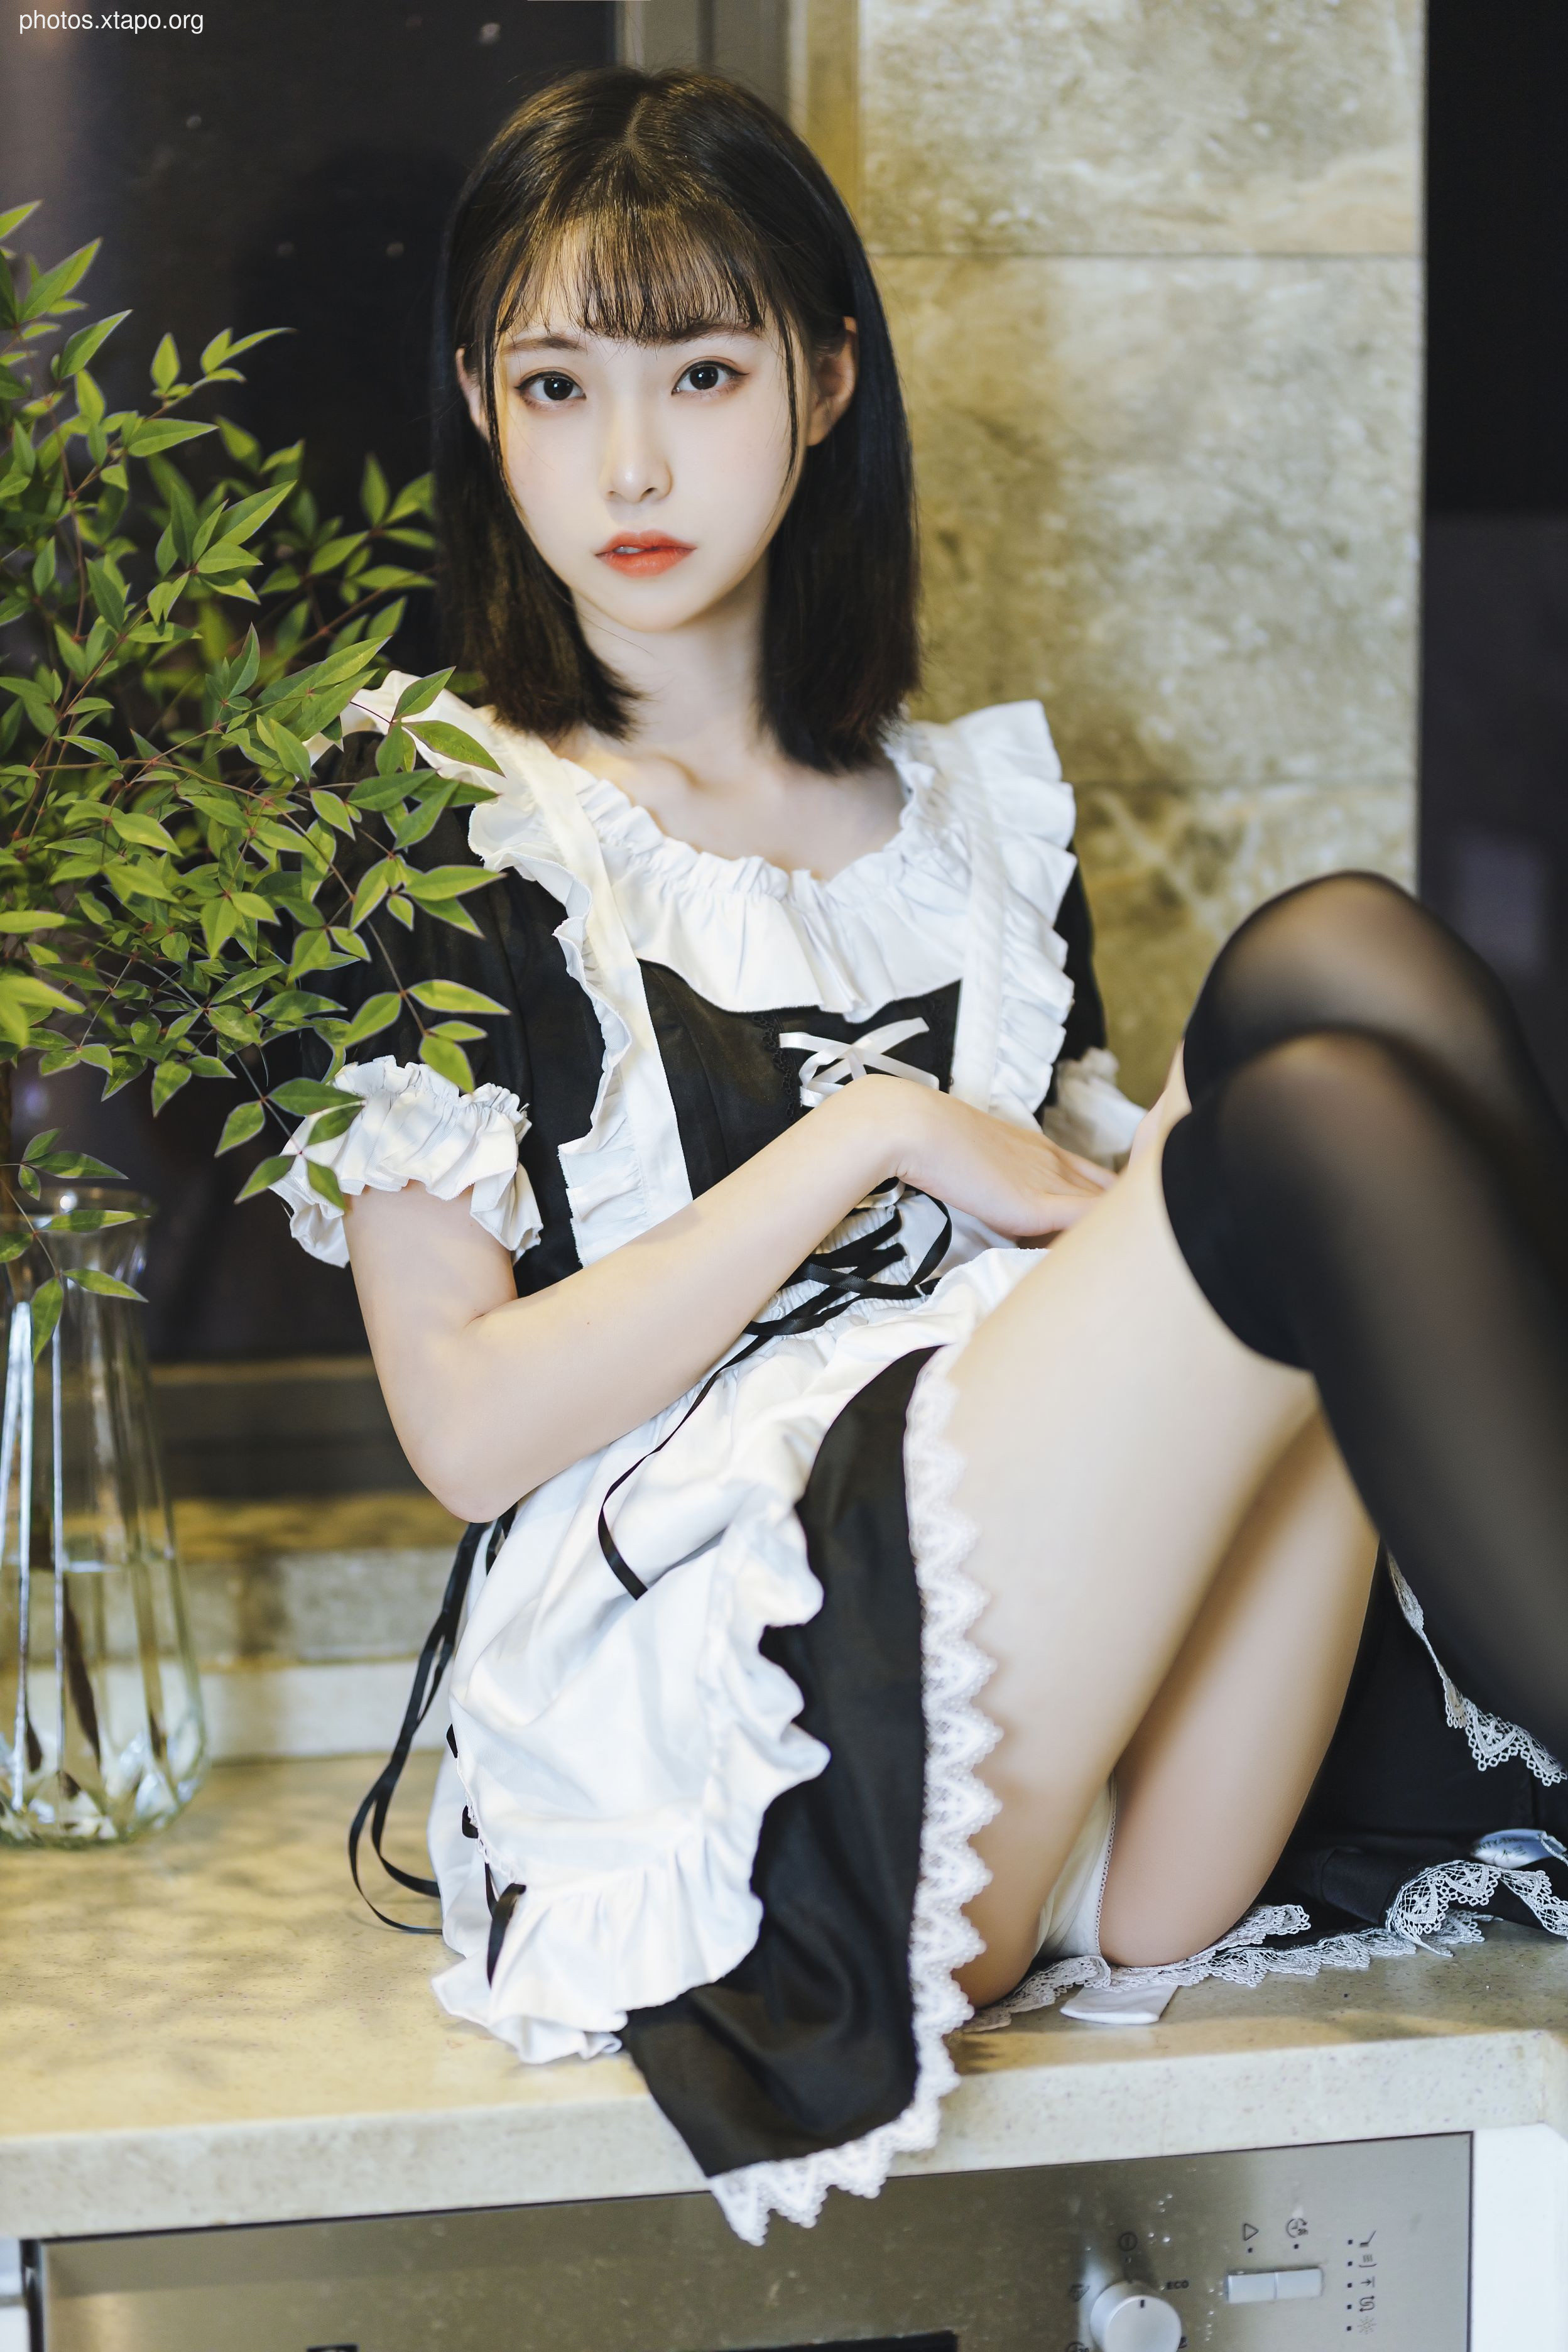 Xu Lan Lan short skirt maid